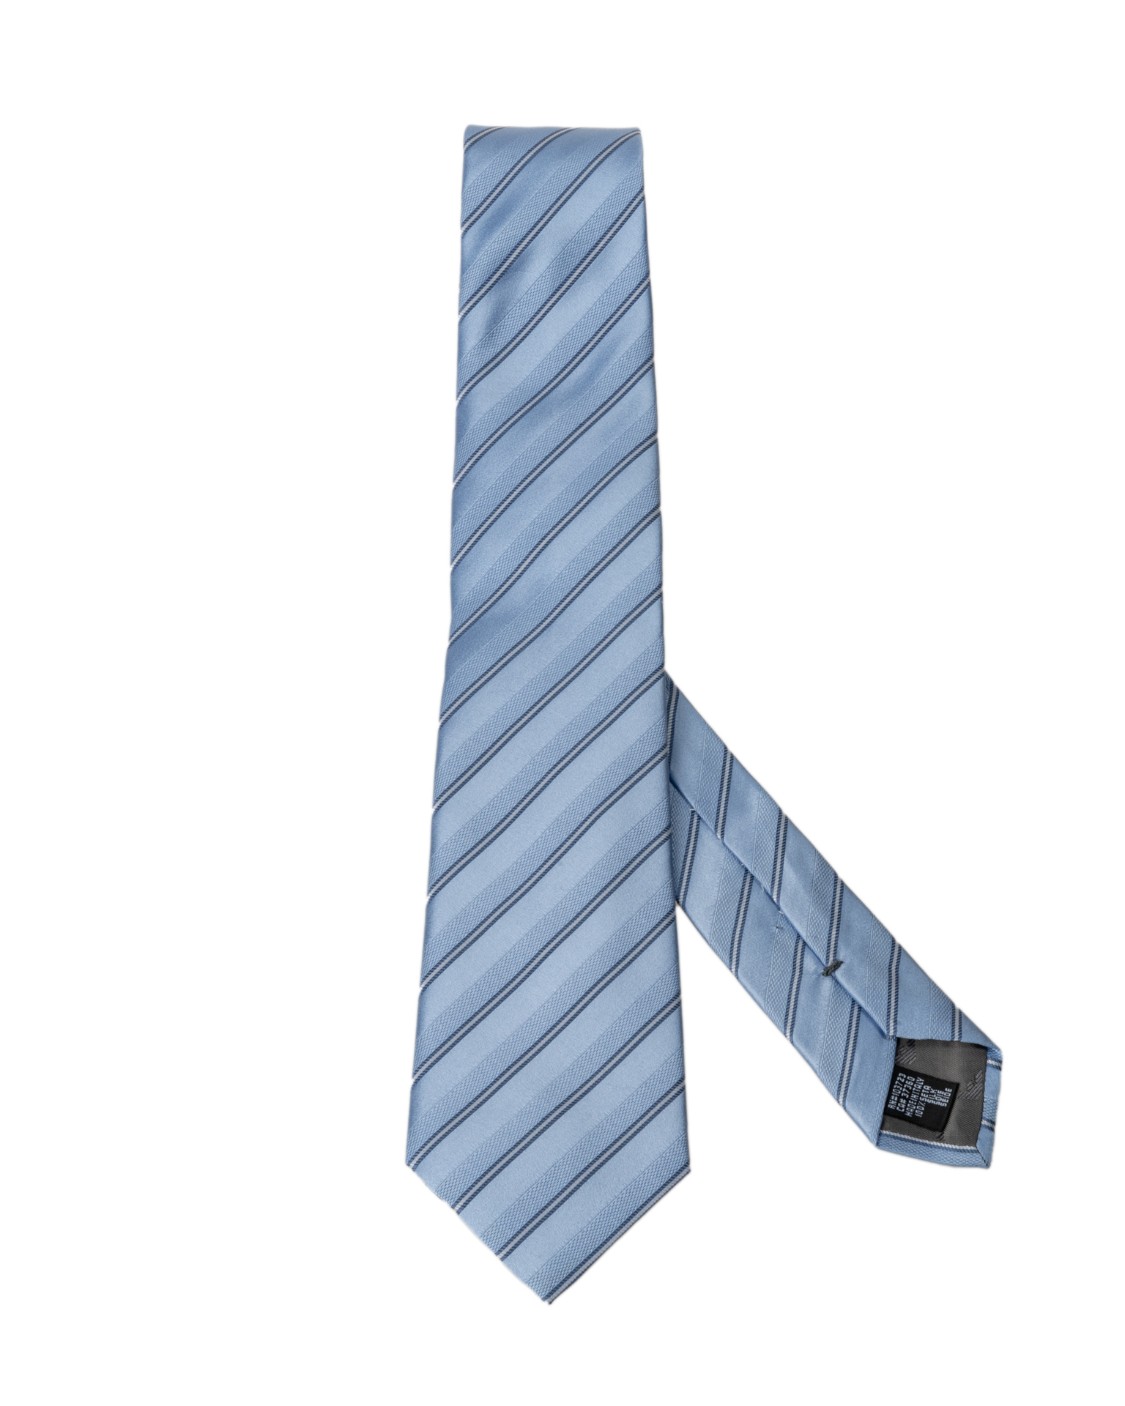 shop EMPORIO ARMANI  Cravatta: Emporio Armani cravatta in seta.
Modello con design a punta.
Larghezza pala 8cm.
Composizione: 100% seta.
Made in Italy.. 340075 9P344-00632 number 864784